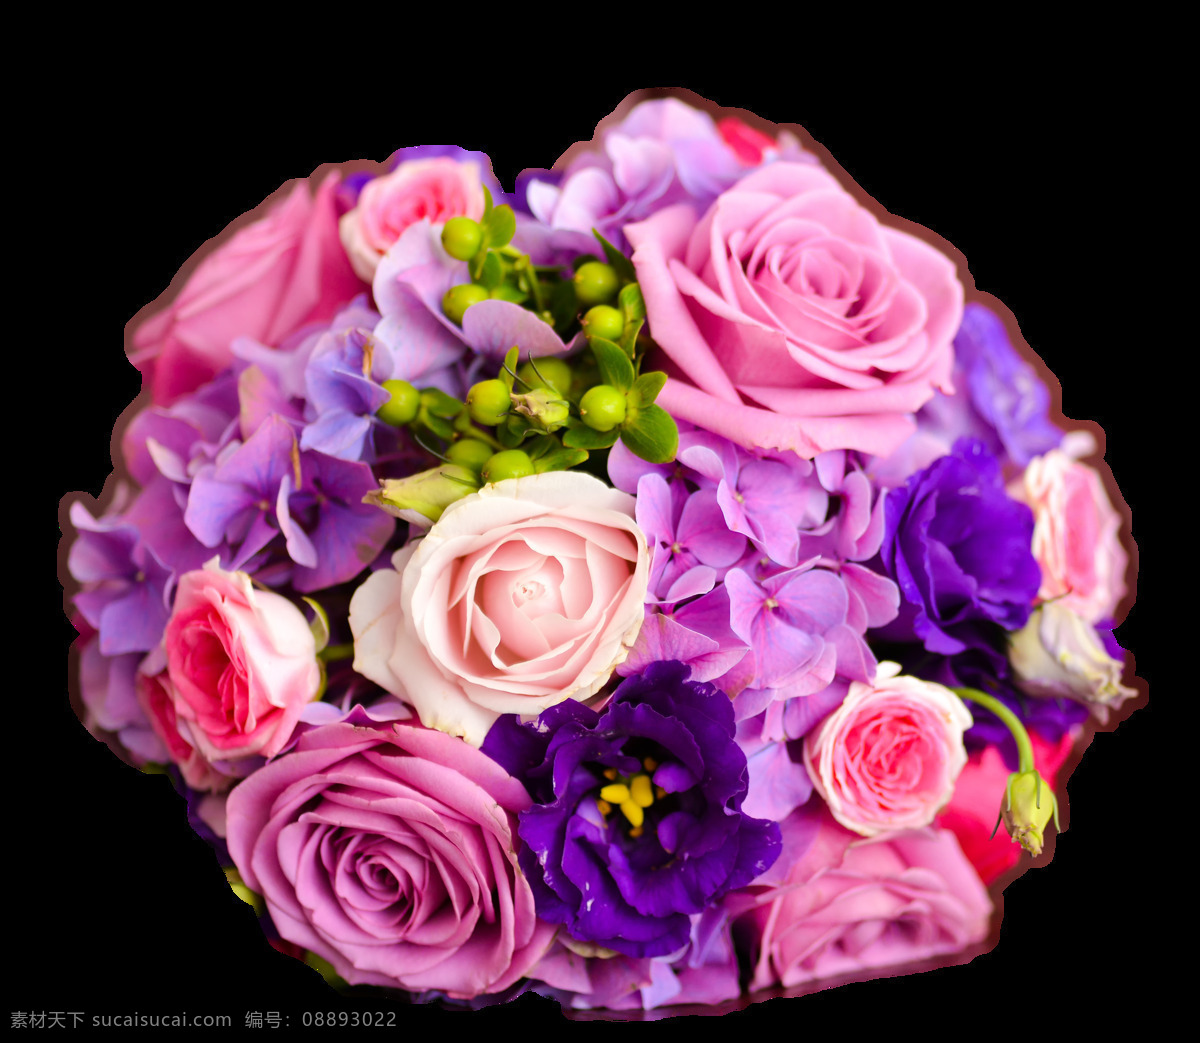 美丽 紫色 玫瑰花 花朵 花束 实物 元素 花瓣 花瓣素材 飘落的花瓣 素材唯美 唯美素材